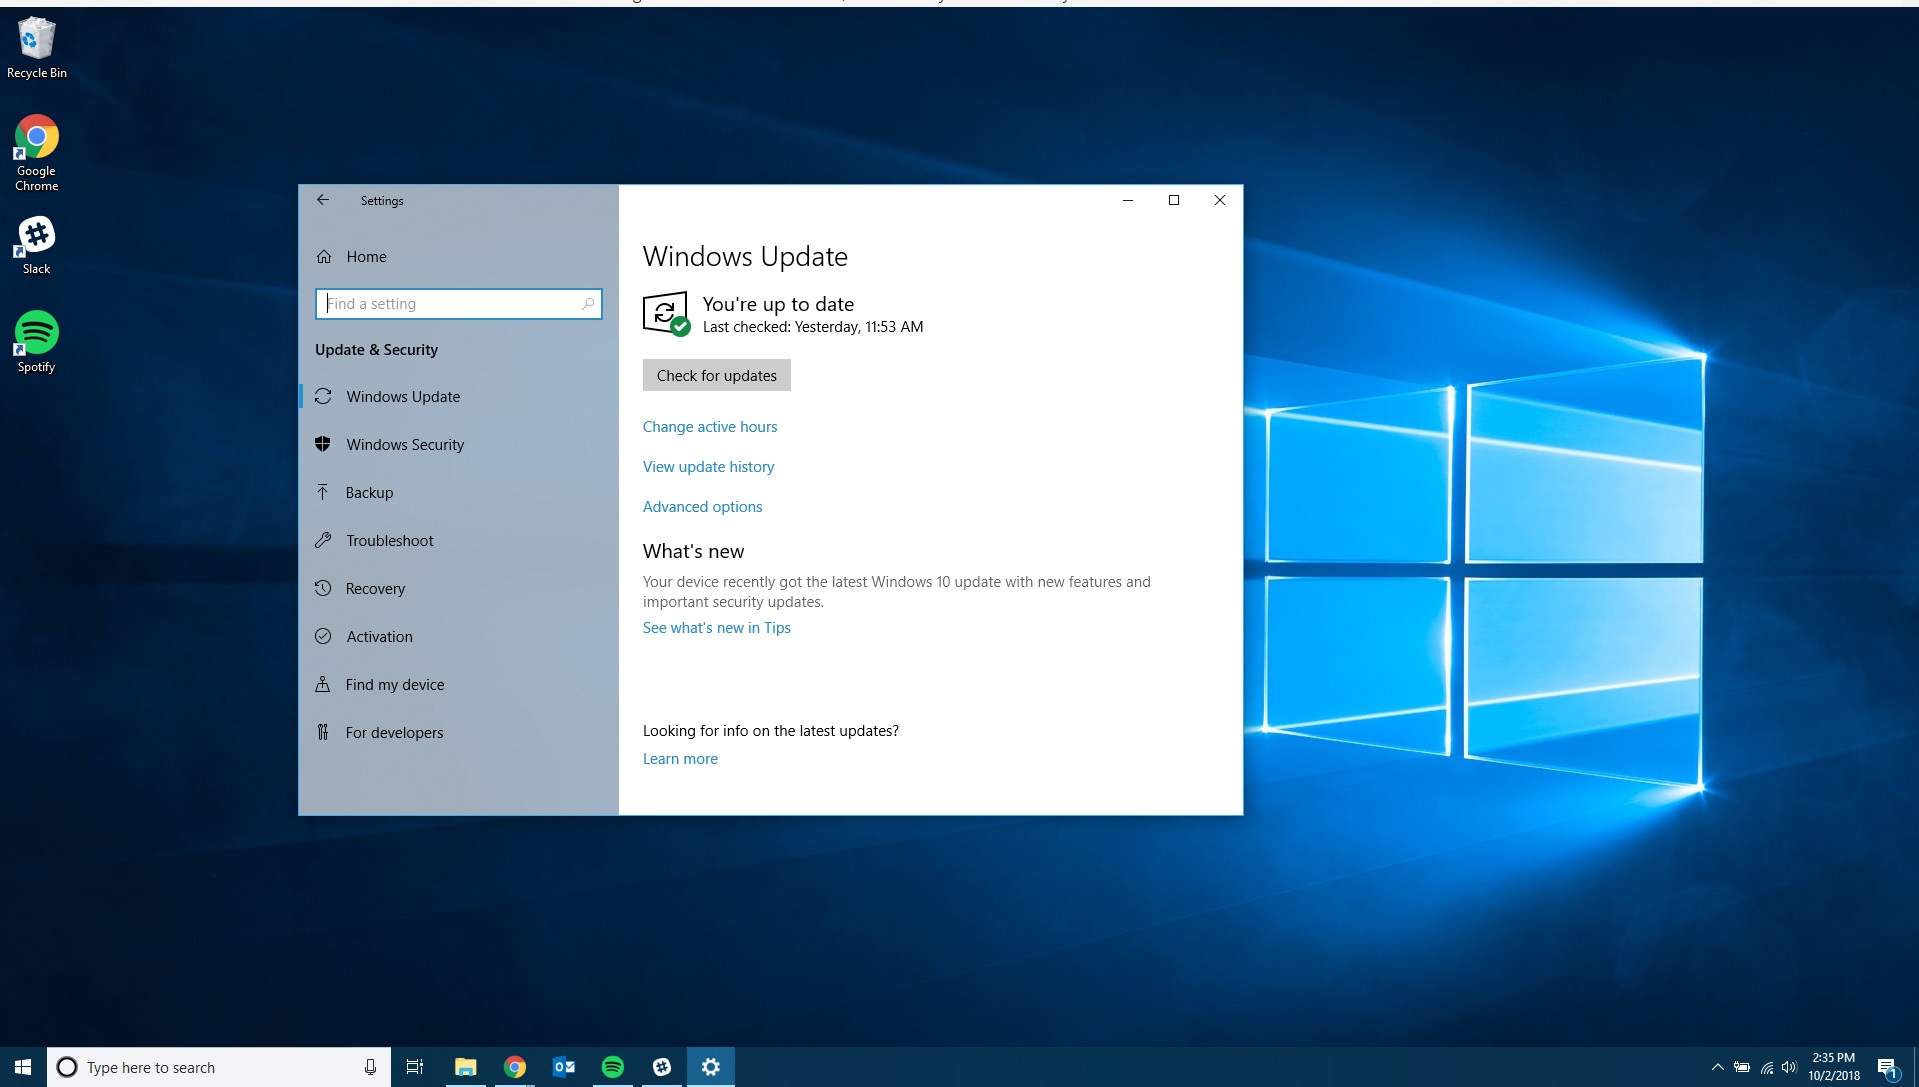 The Windows Update screen in Windows 10.